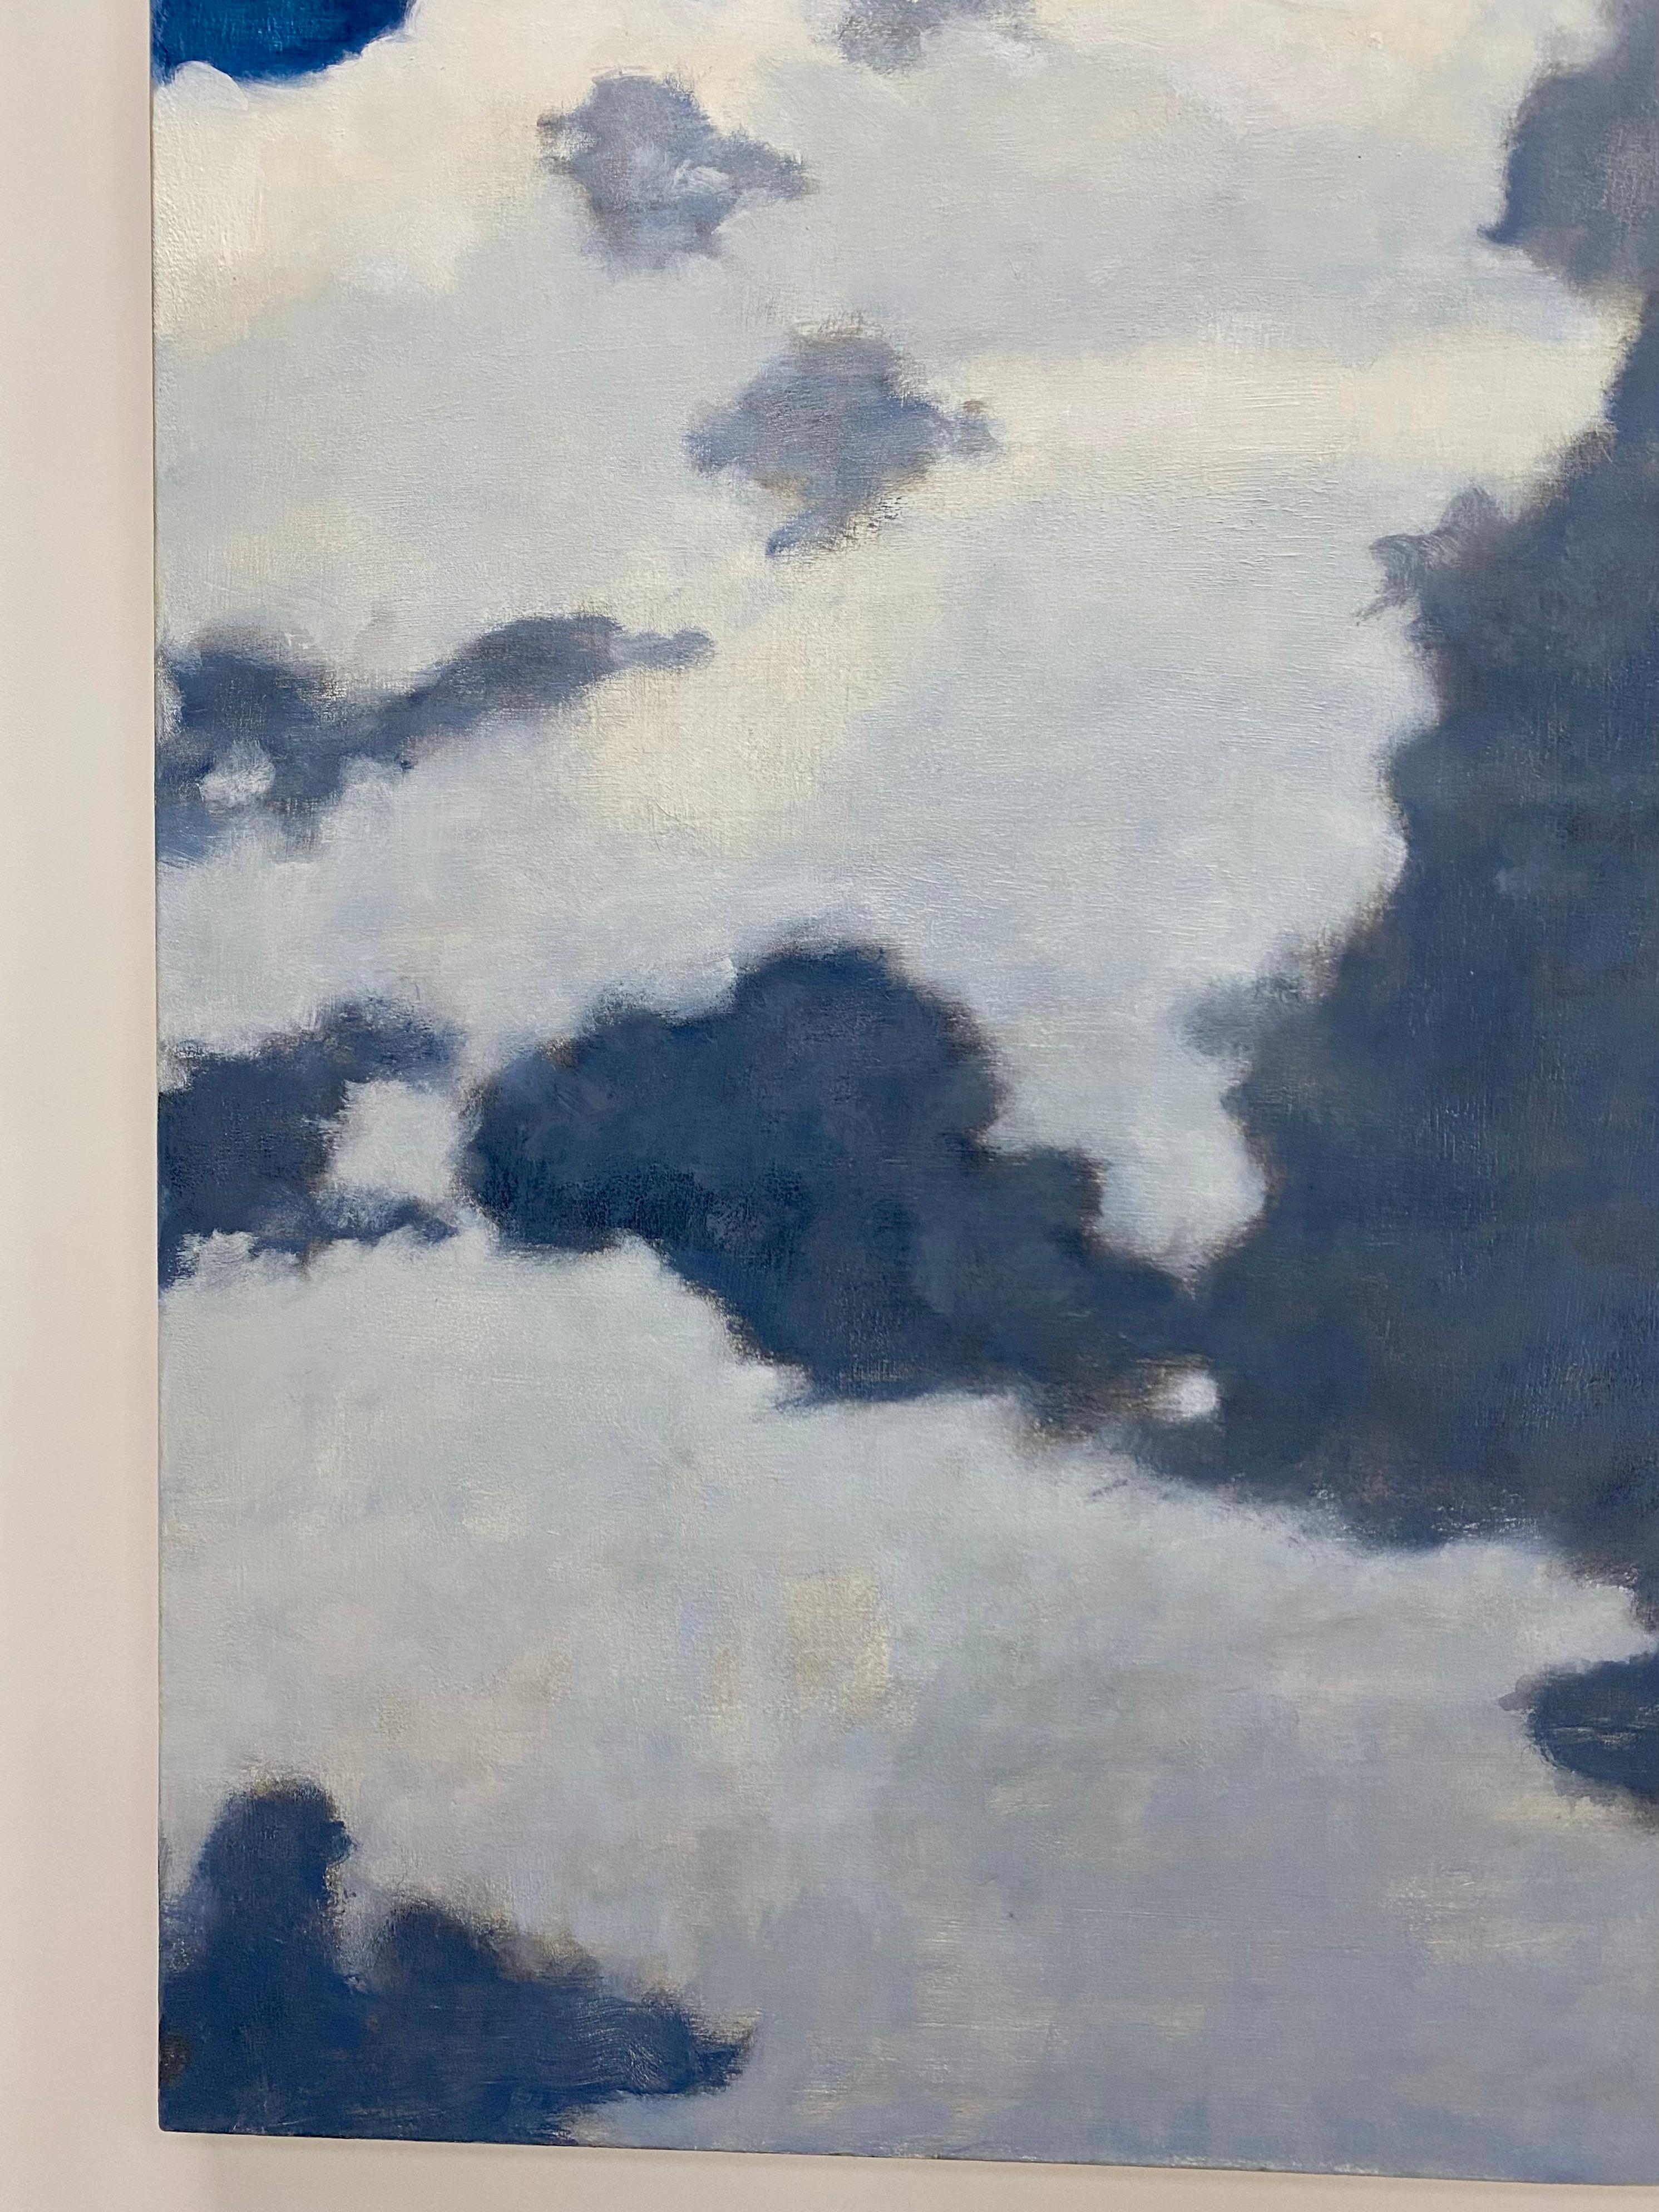 De A Window Seat One, nuages ivoire crème, ciel bleu cobalt, paysage - Contemporain Painting par David Konigsberg